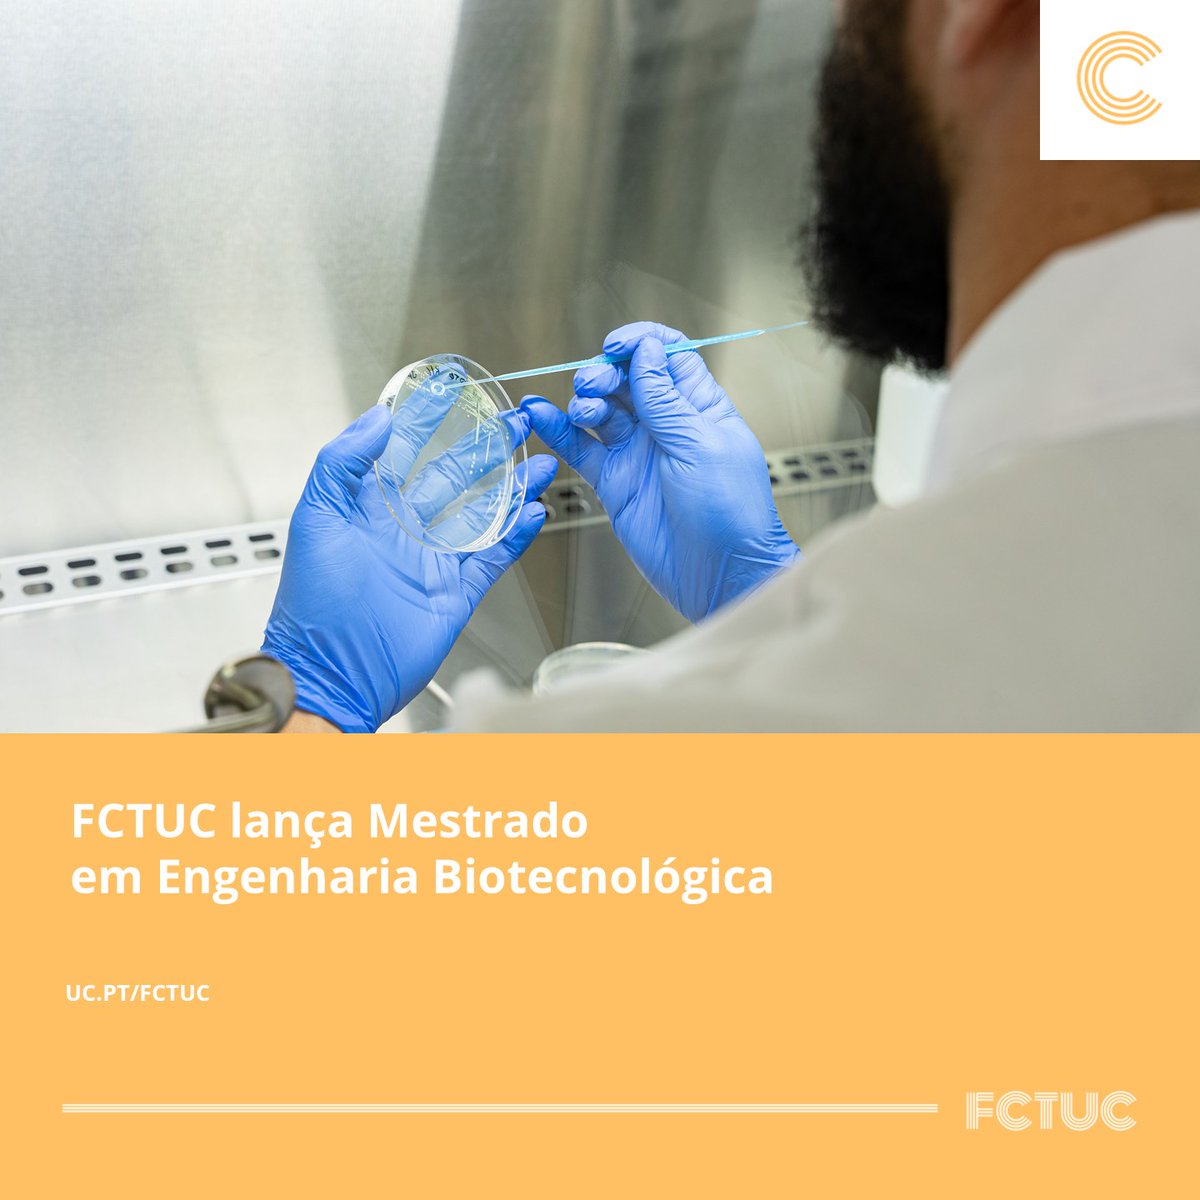 FCTUC lança Mestrado em Engenharia Biotecnológica. Mais informações aqui: uc.pt/fctuc/noticias…